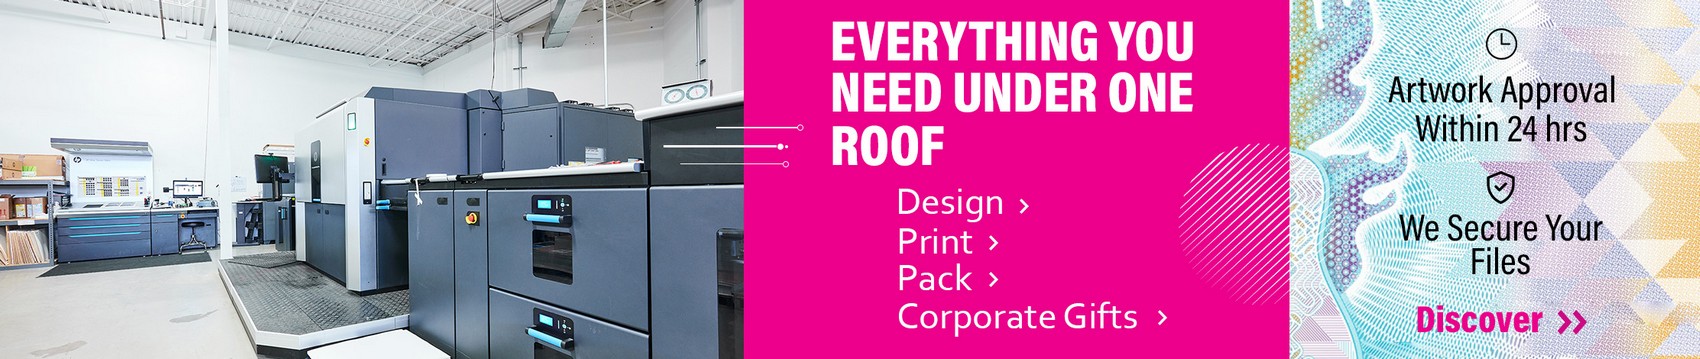 Elite Printers under one roof